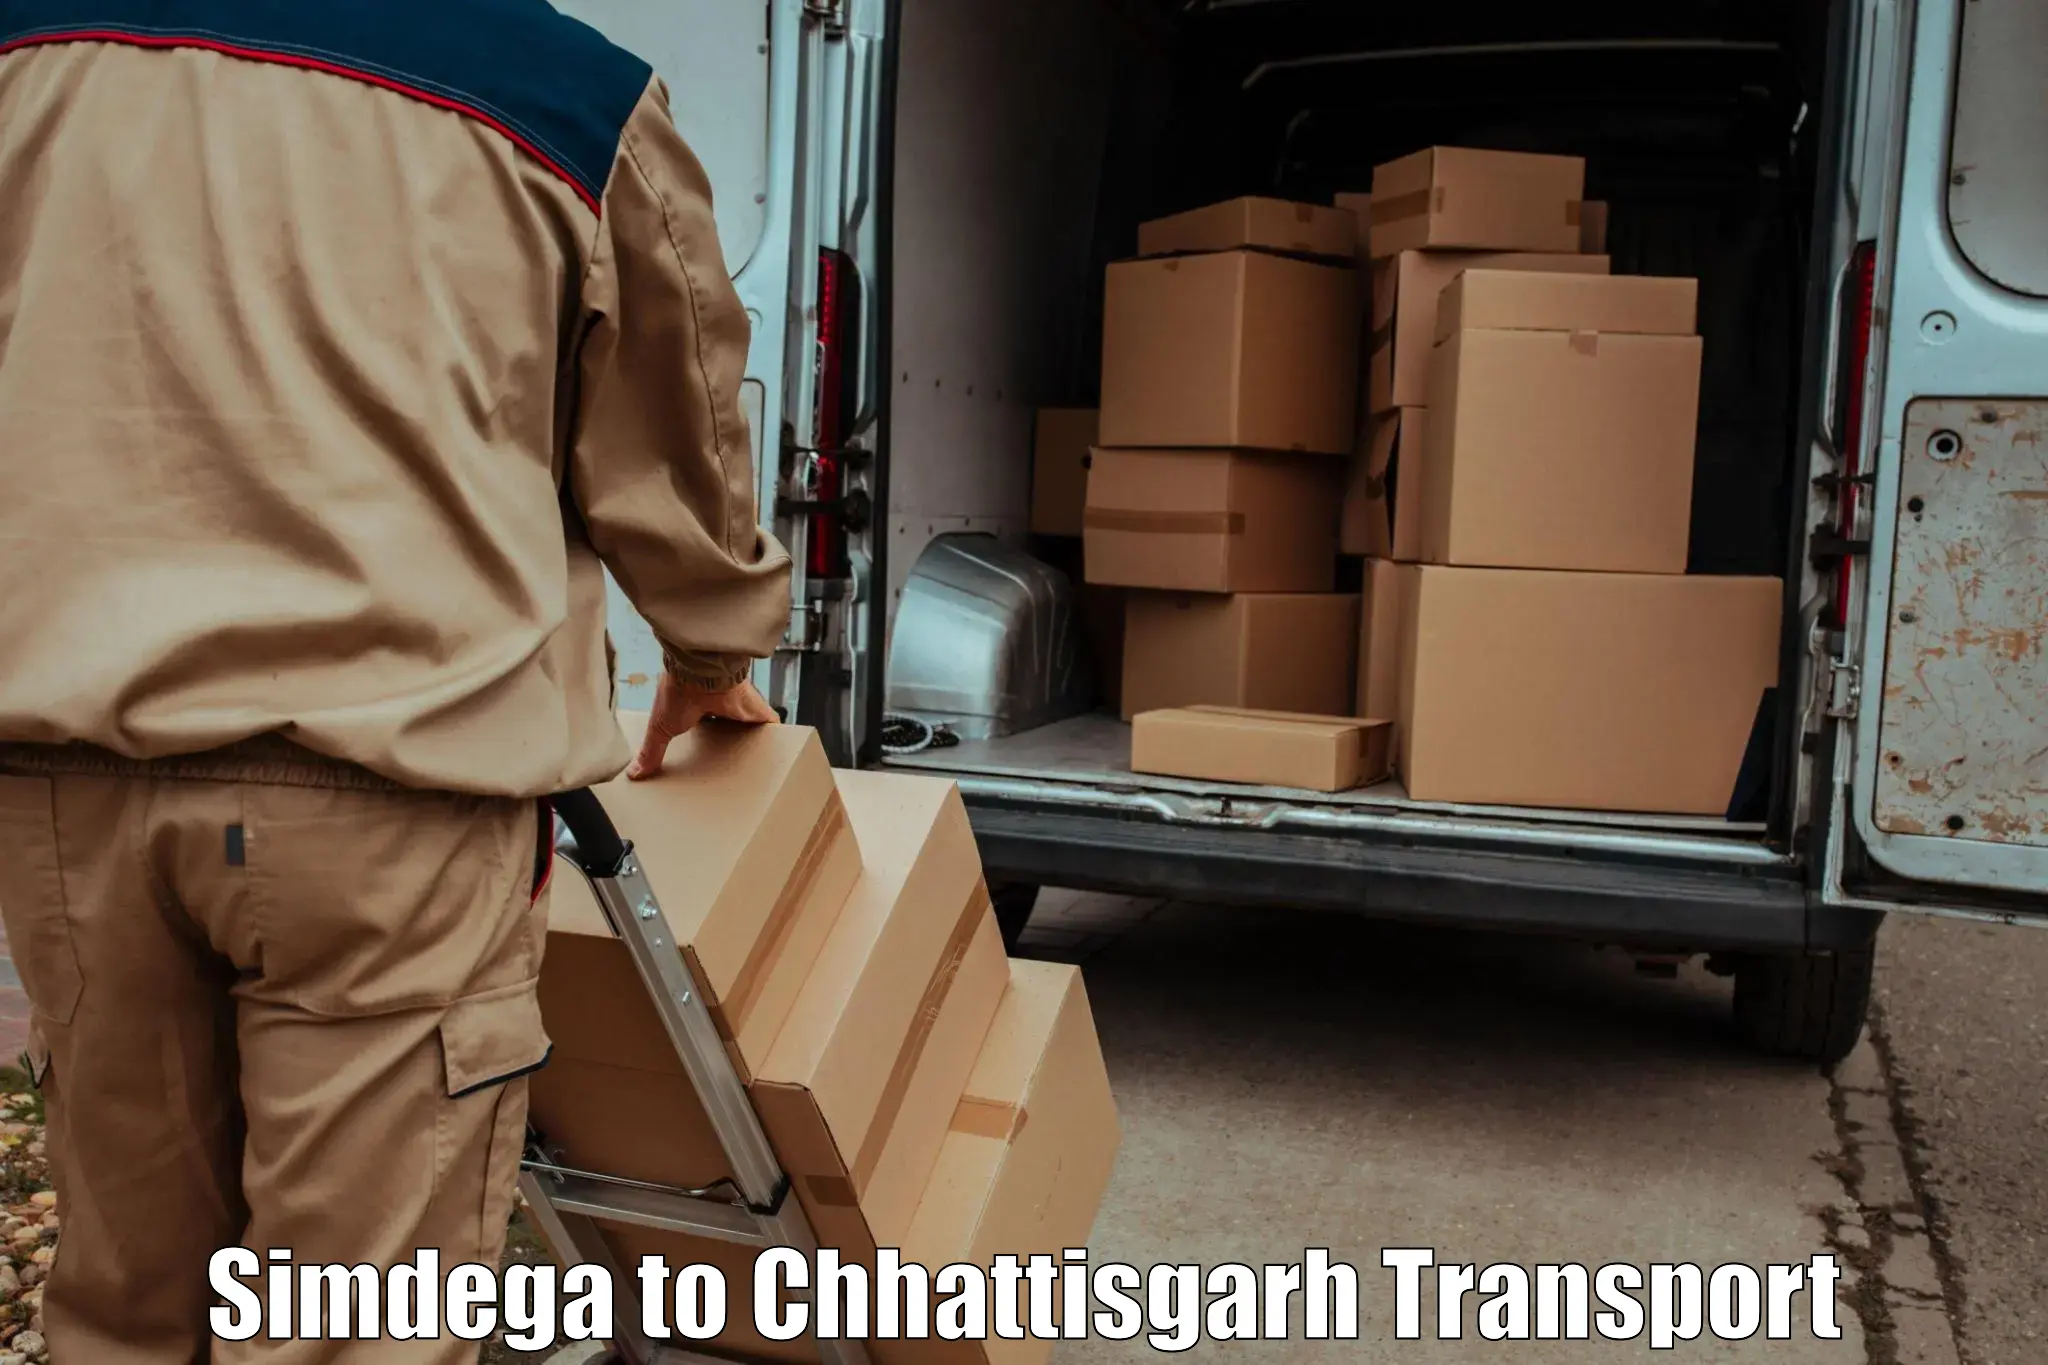 Transport in sharing Simdega to Chhattisgarh